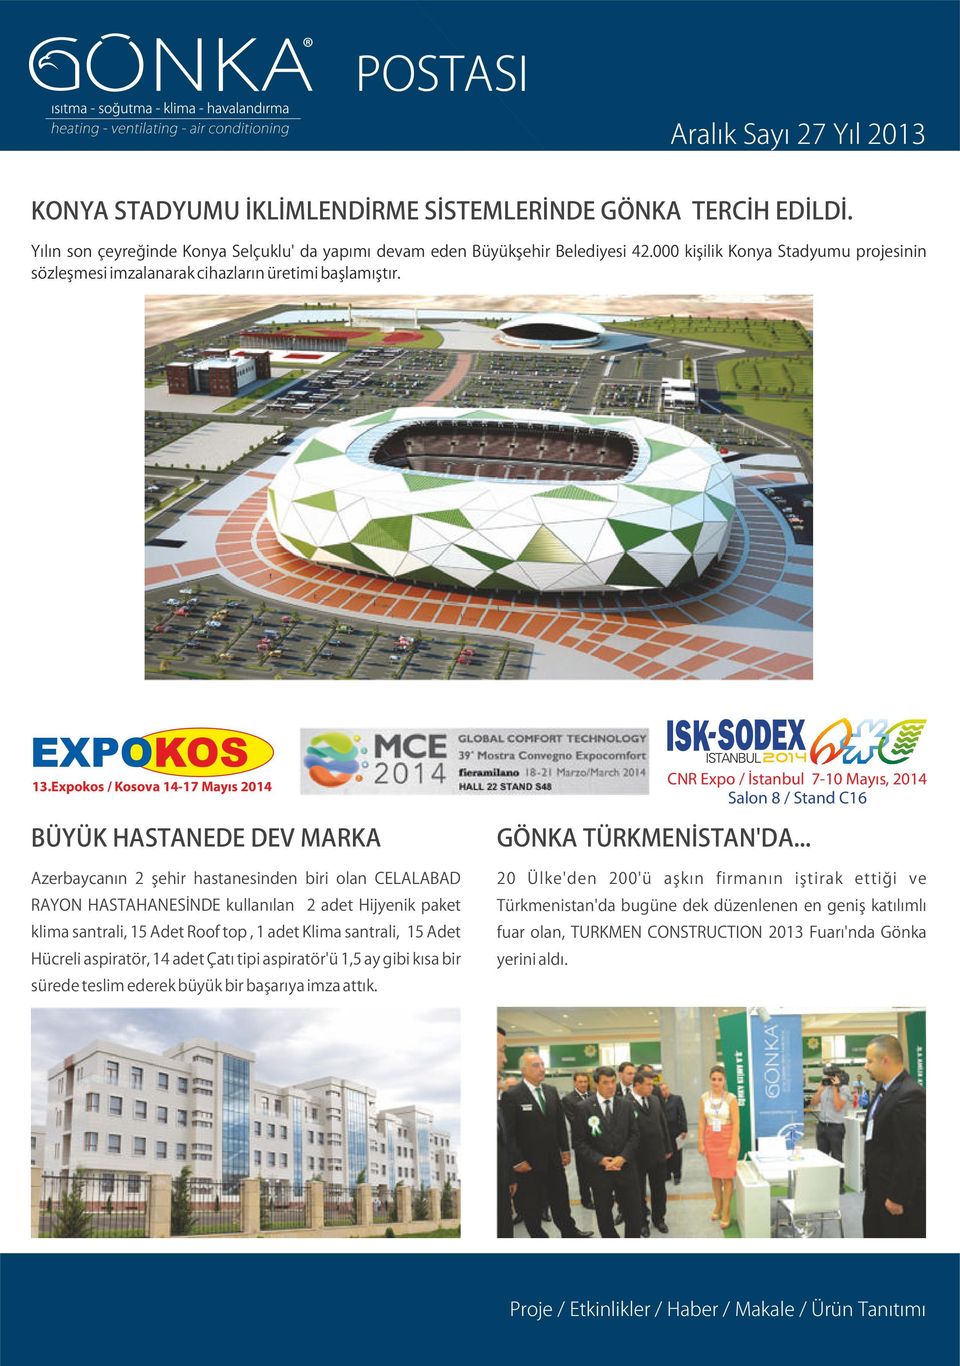 Expokos / Kosova 14-17 Mayıs 2014 BÜYÜK HASTANEDE DEV MARKA Azerbaycanın 2 şehir hastanesinden biri olan CELALABAD RAYON HASTAHANESİNDE kullanılan 2 adet Hijyenik paket klima santrali, 15 Adet Roof